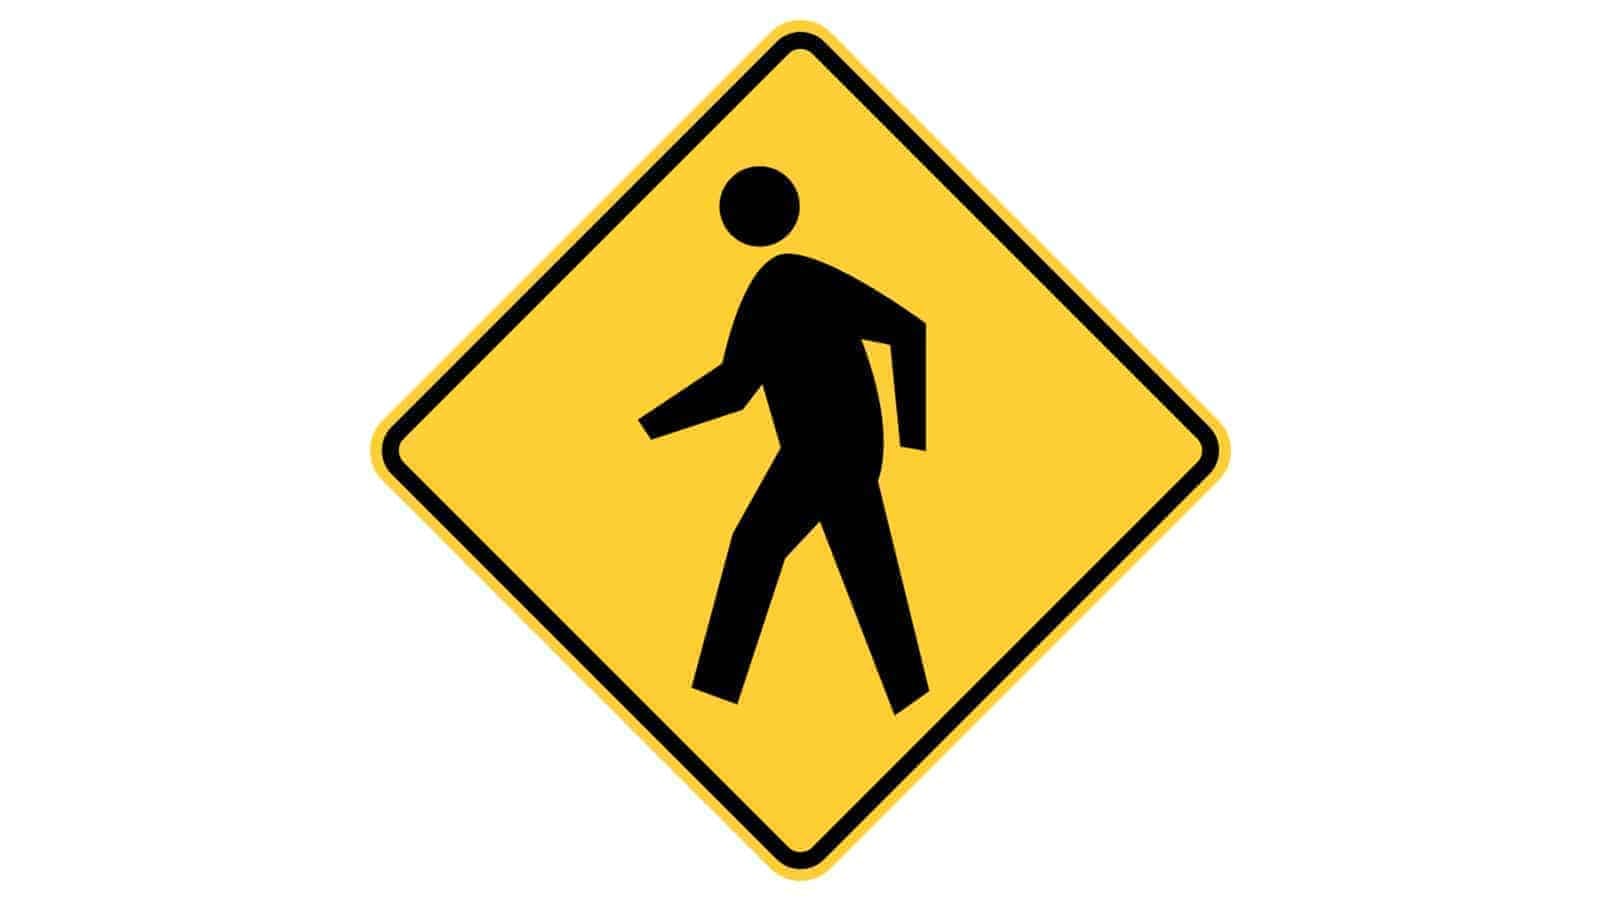 Warning sign Pedestrian Crossing